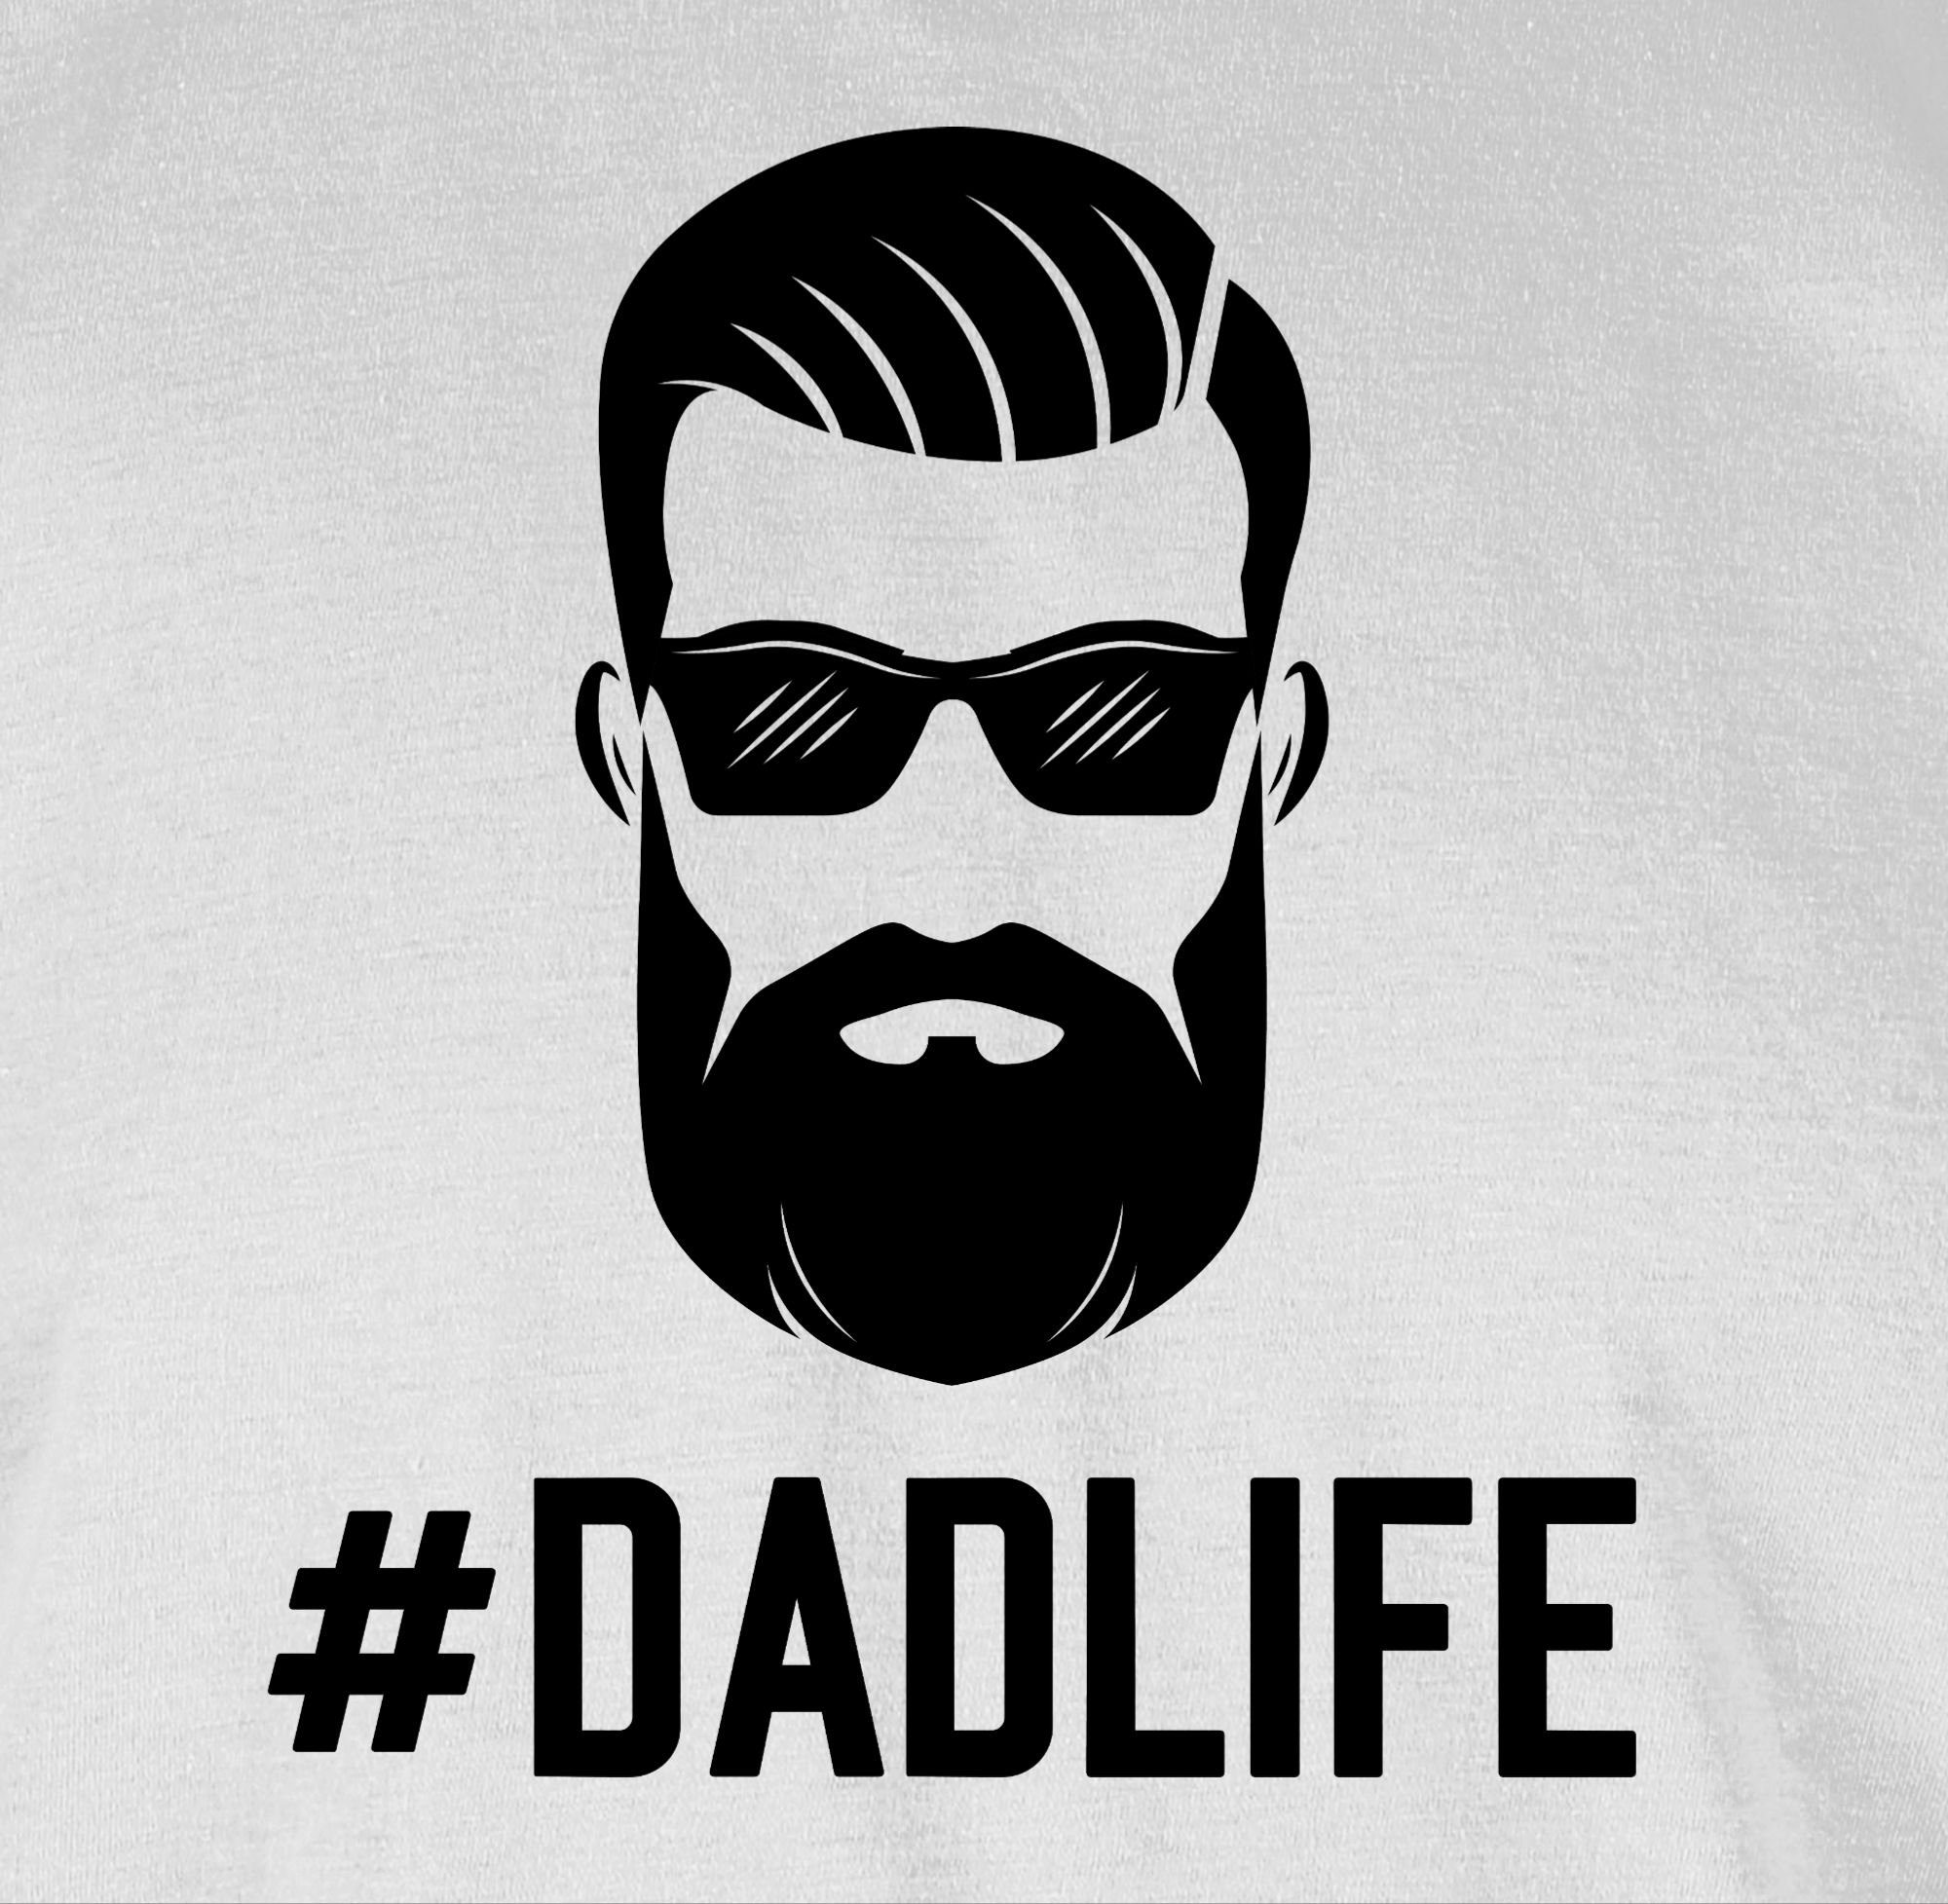 für Shirtracer T-Shirt 03 Vatertag Papa Dadlife Geschenk Hashtag Weiß